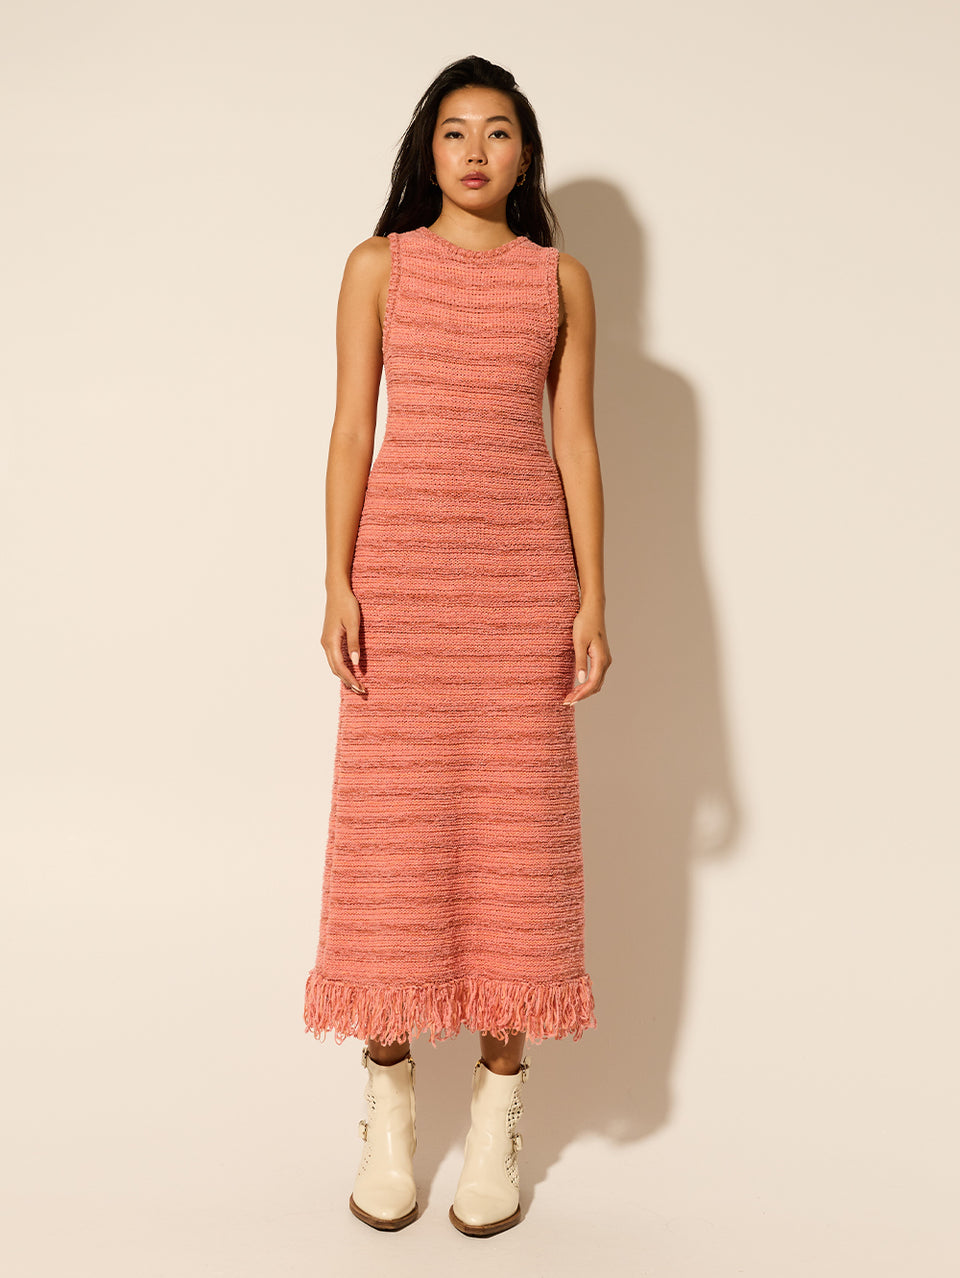 Luciana Knit Midi Dress Pink KIVARI | Model wears pink knit midi dress